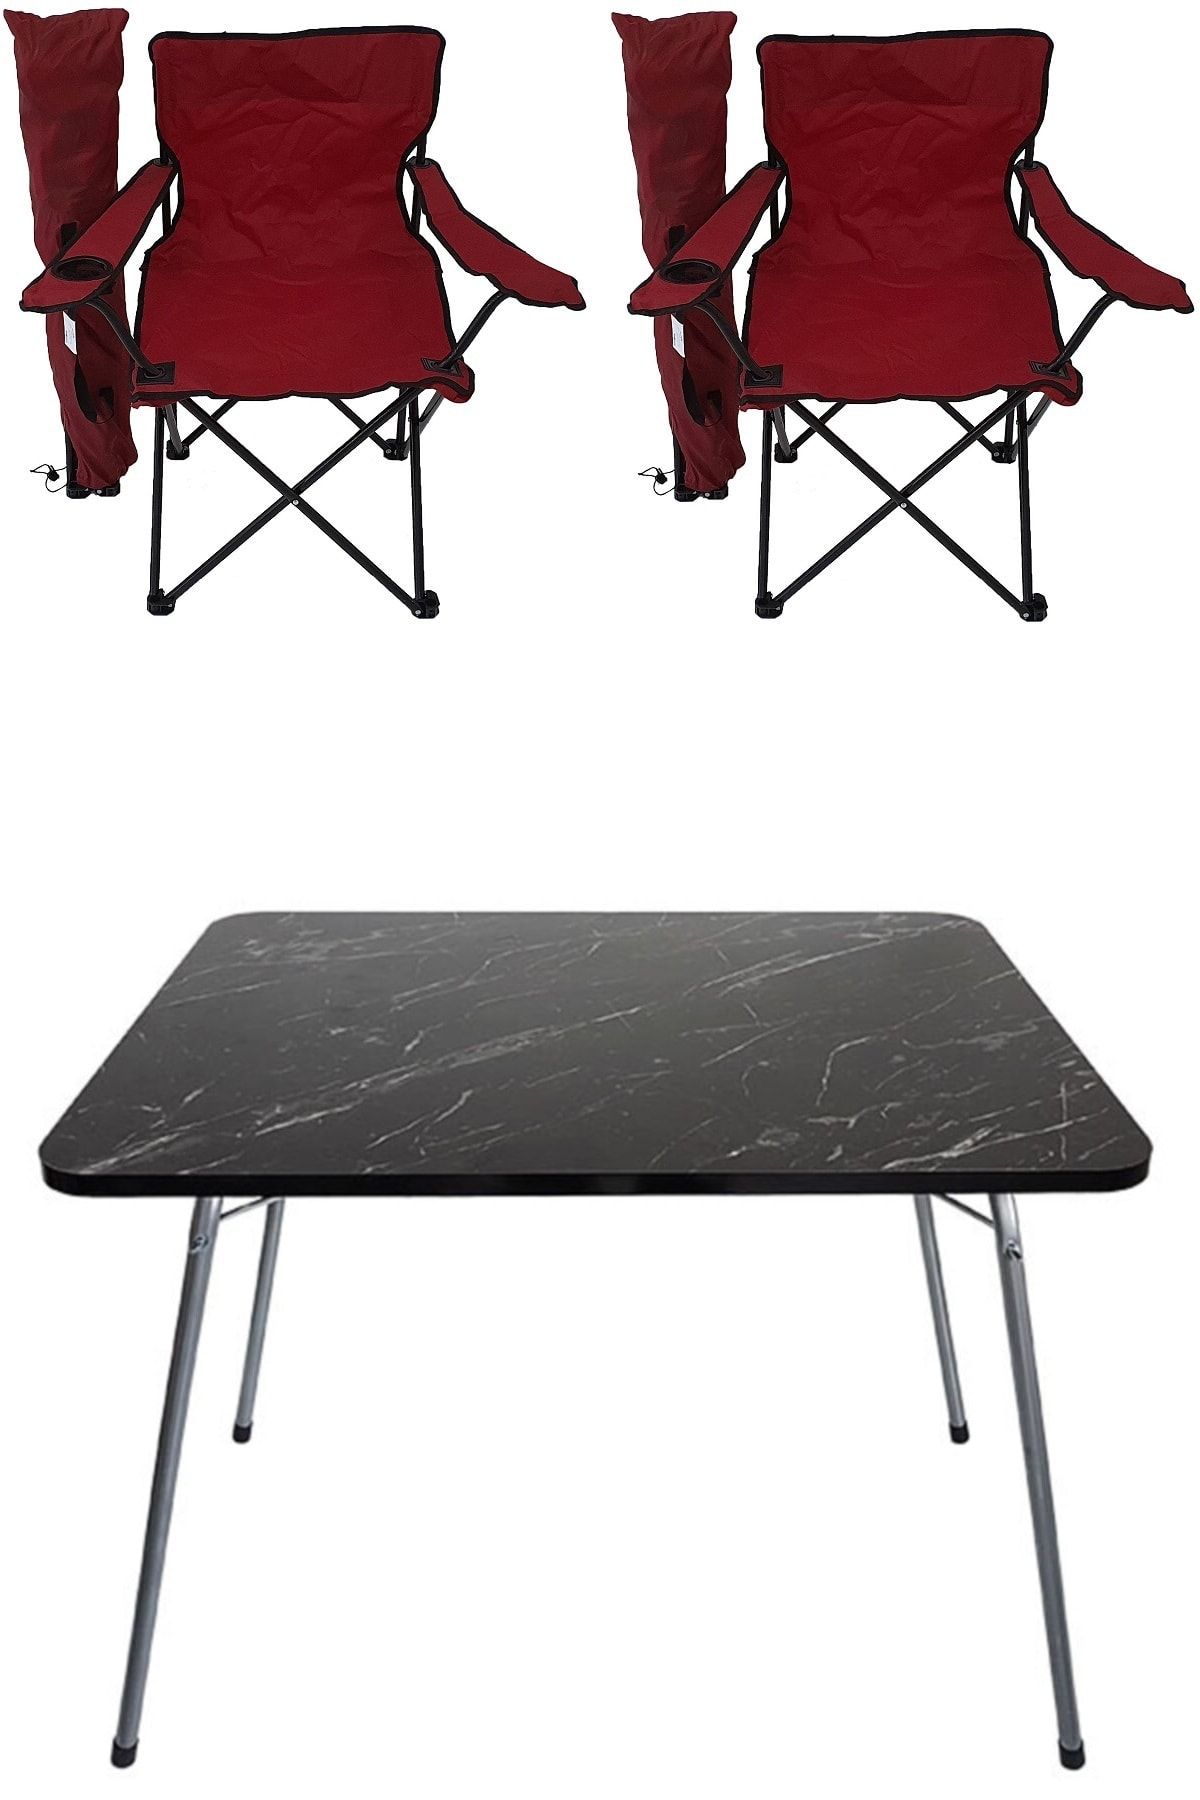 Bofigo 60x80 Granit Katlanır Masa +2 Adet KırmızıKamp Sandalyesi Katlanır Sandalye Piknik Plaj Sandalyesi